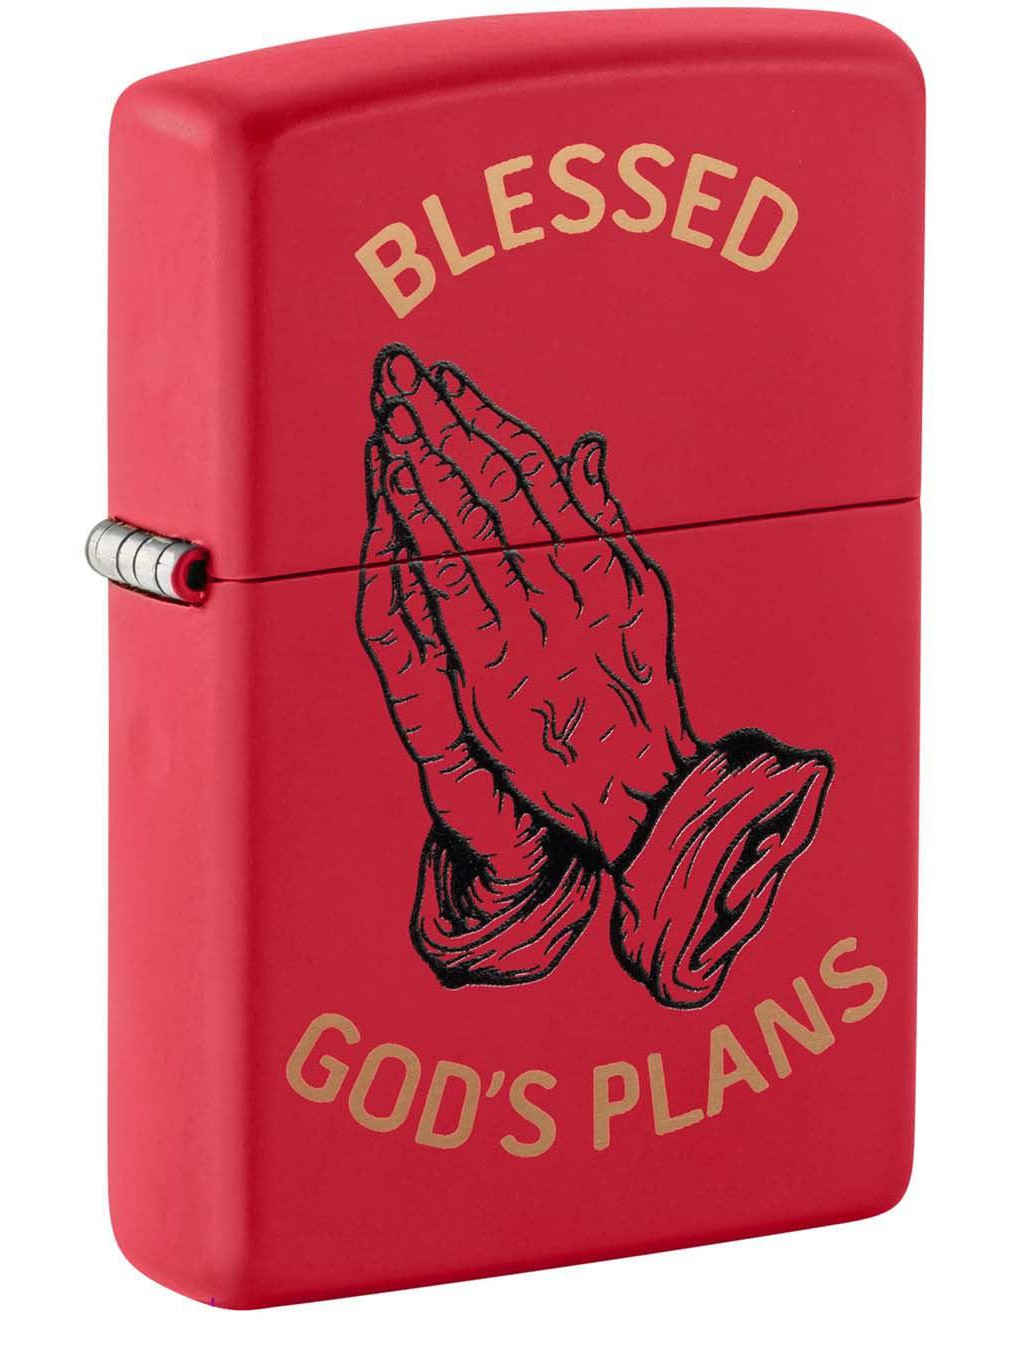 Zippo Lighter: Blessed, God's Plans - Red Matte 48530